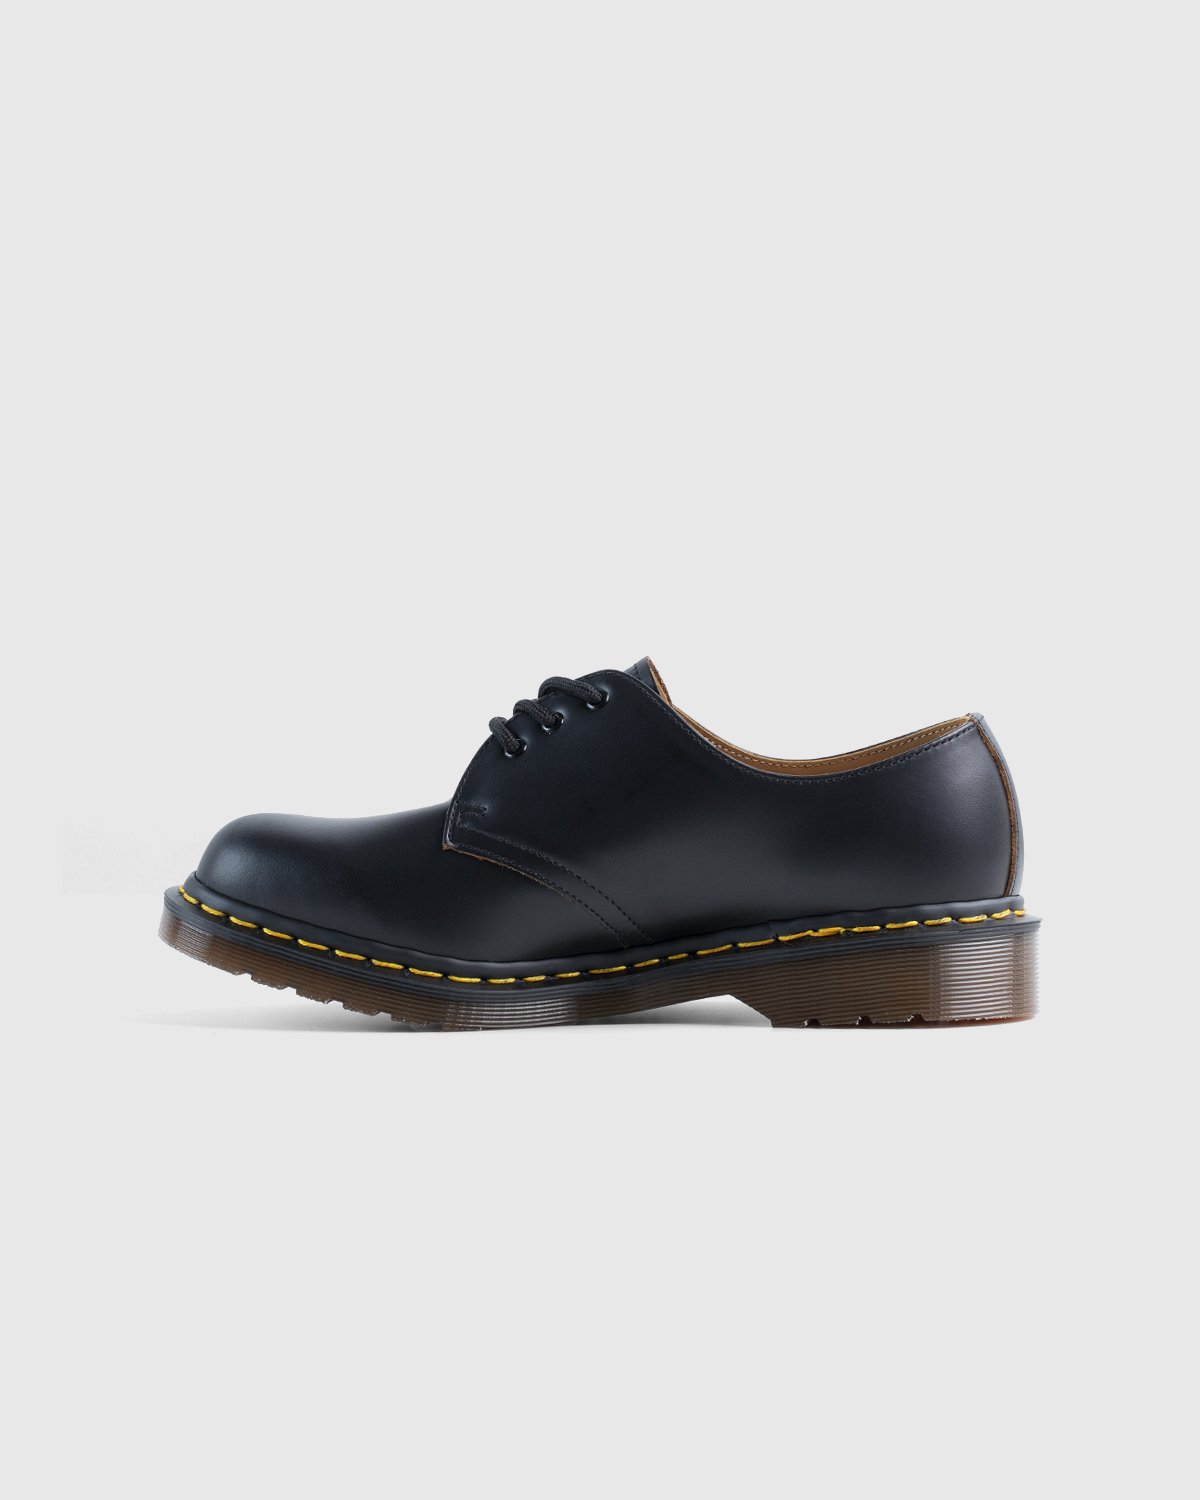 Dr. Martens - Vintage 1461 Black Quilon - Footwear - Black - Image 2